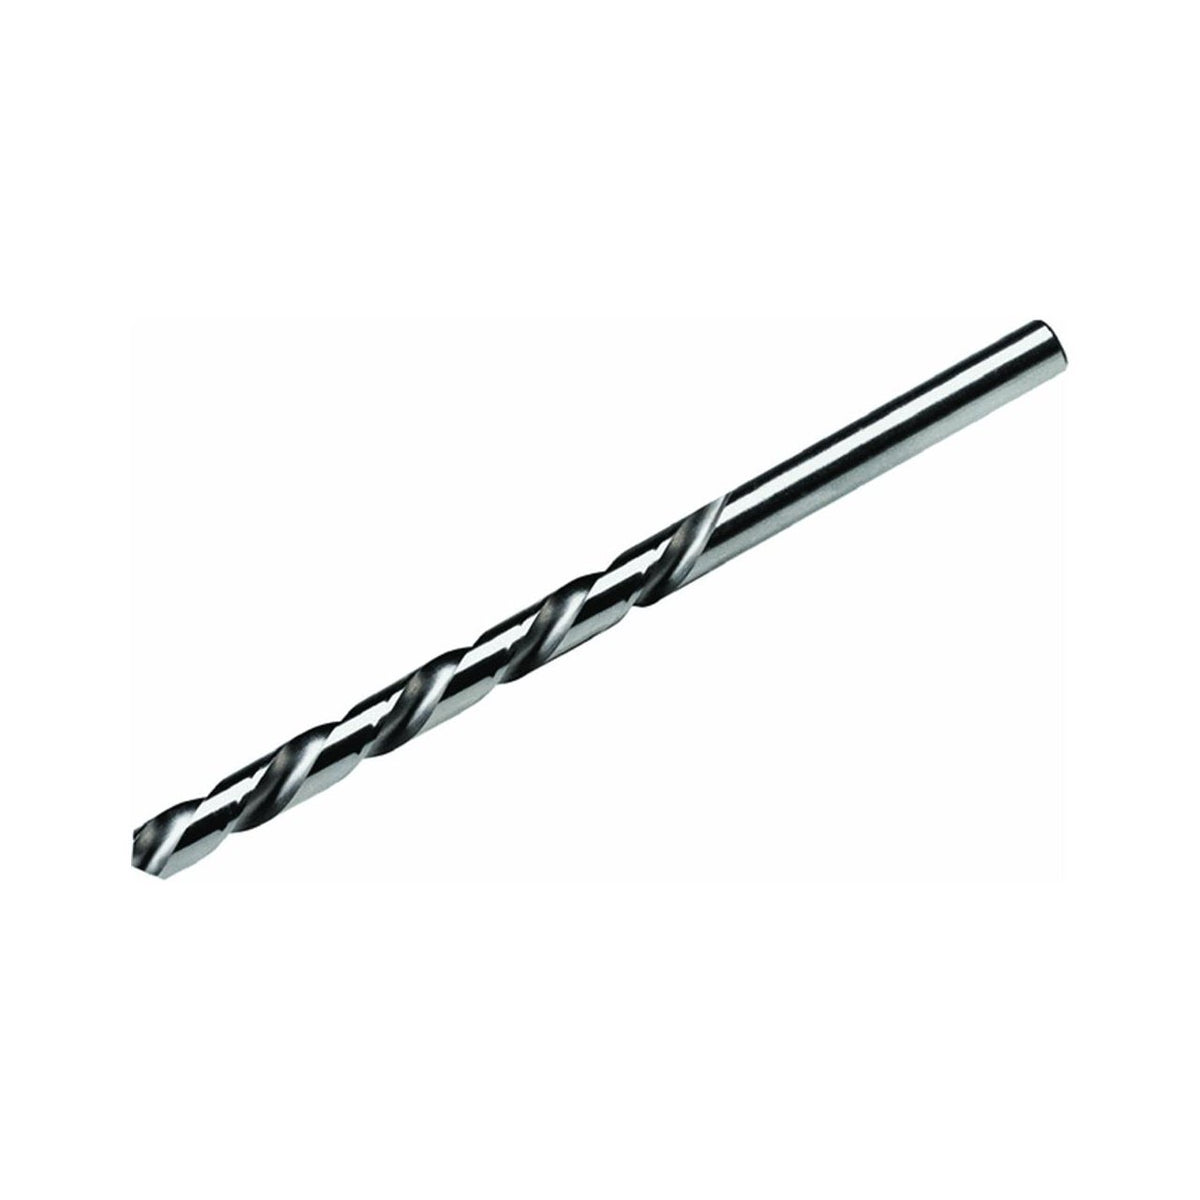 Irwin 81154 High Speed Steel Wire Gauge Drill Bit, #54